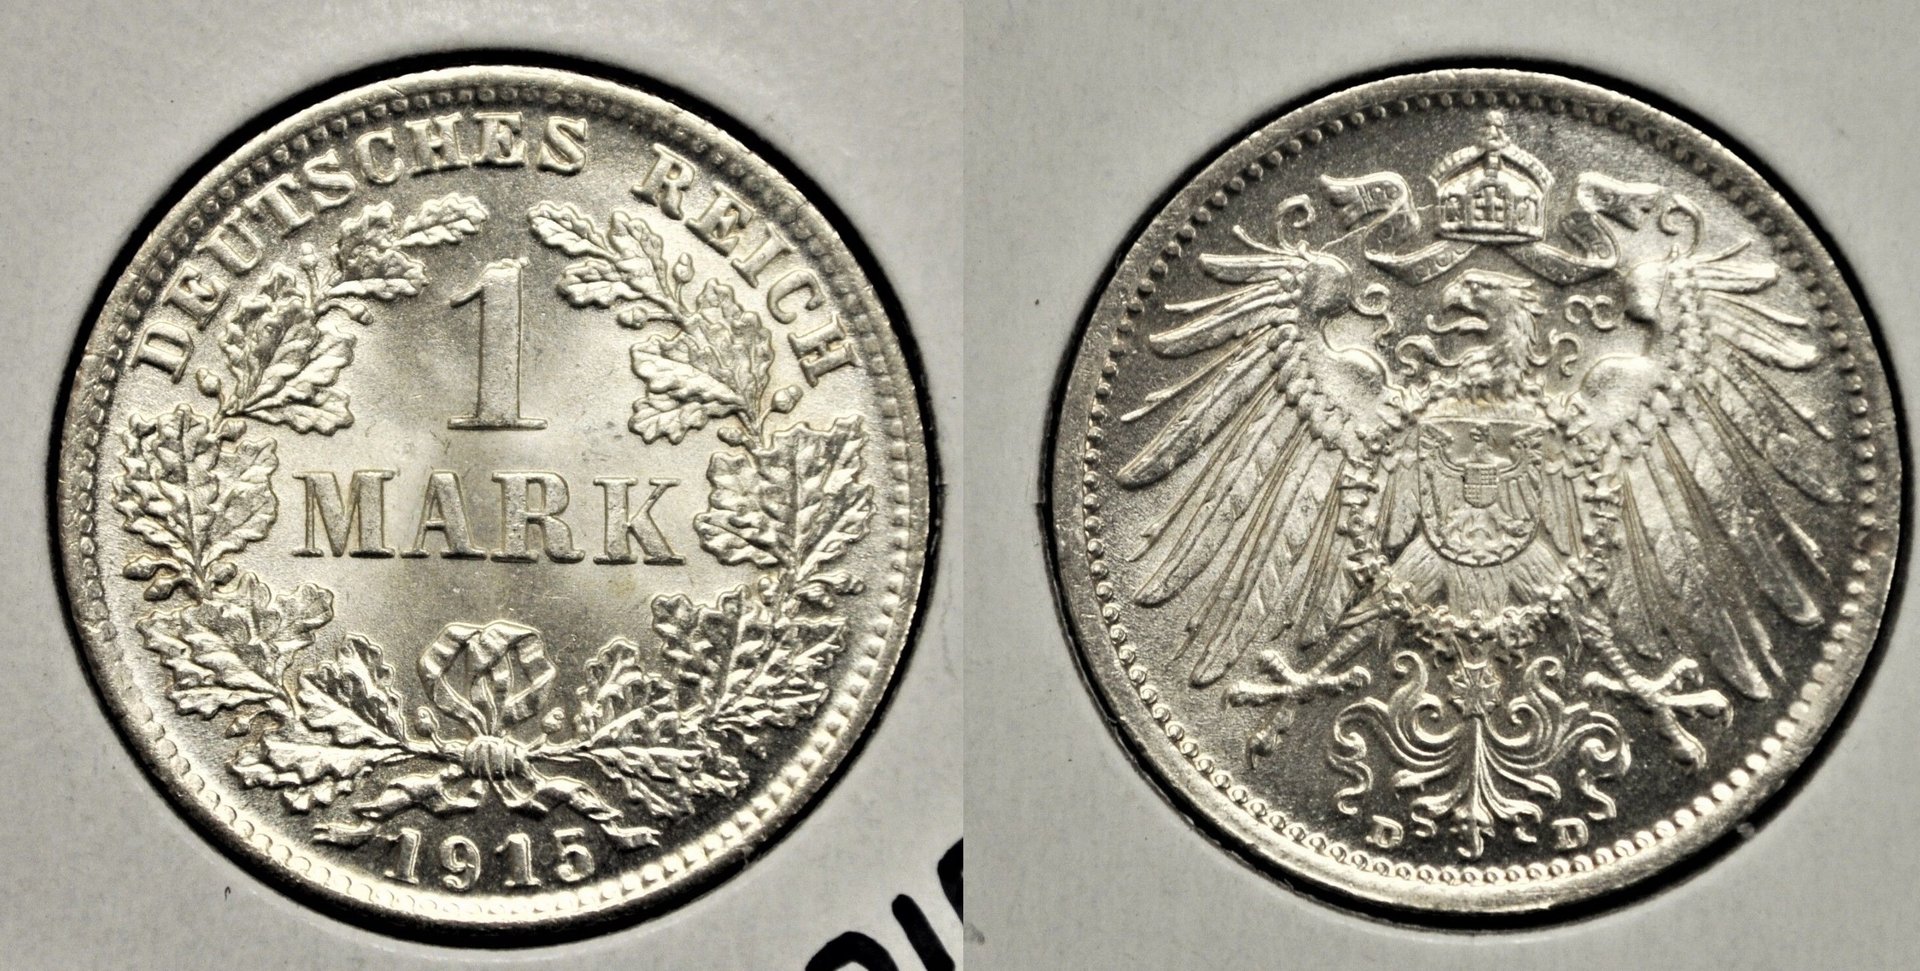 1915-D Germany 1 Mark - MS-64  $30.50 + $4.58  352352755226  citcns.jpg